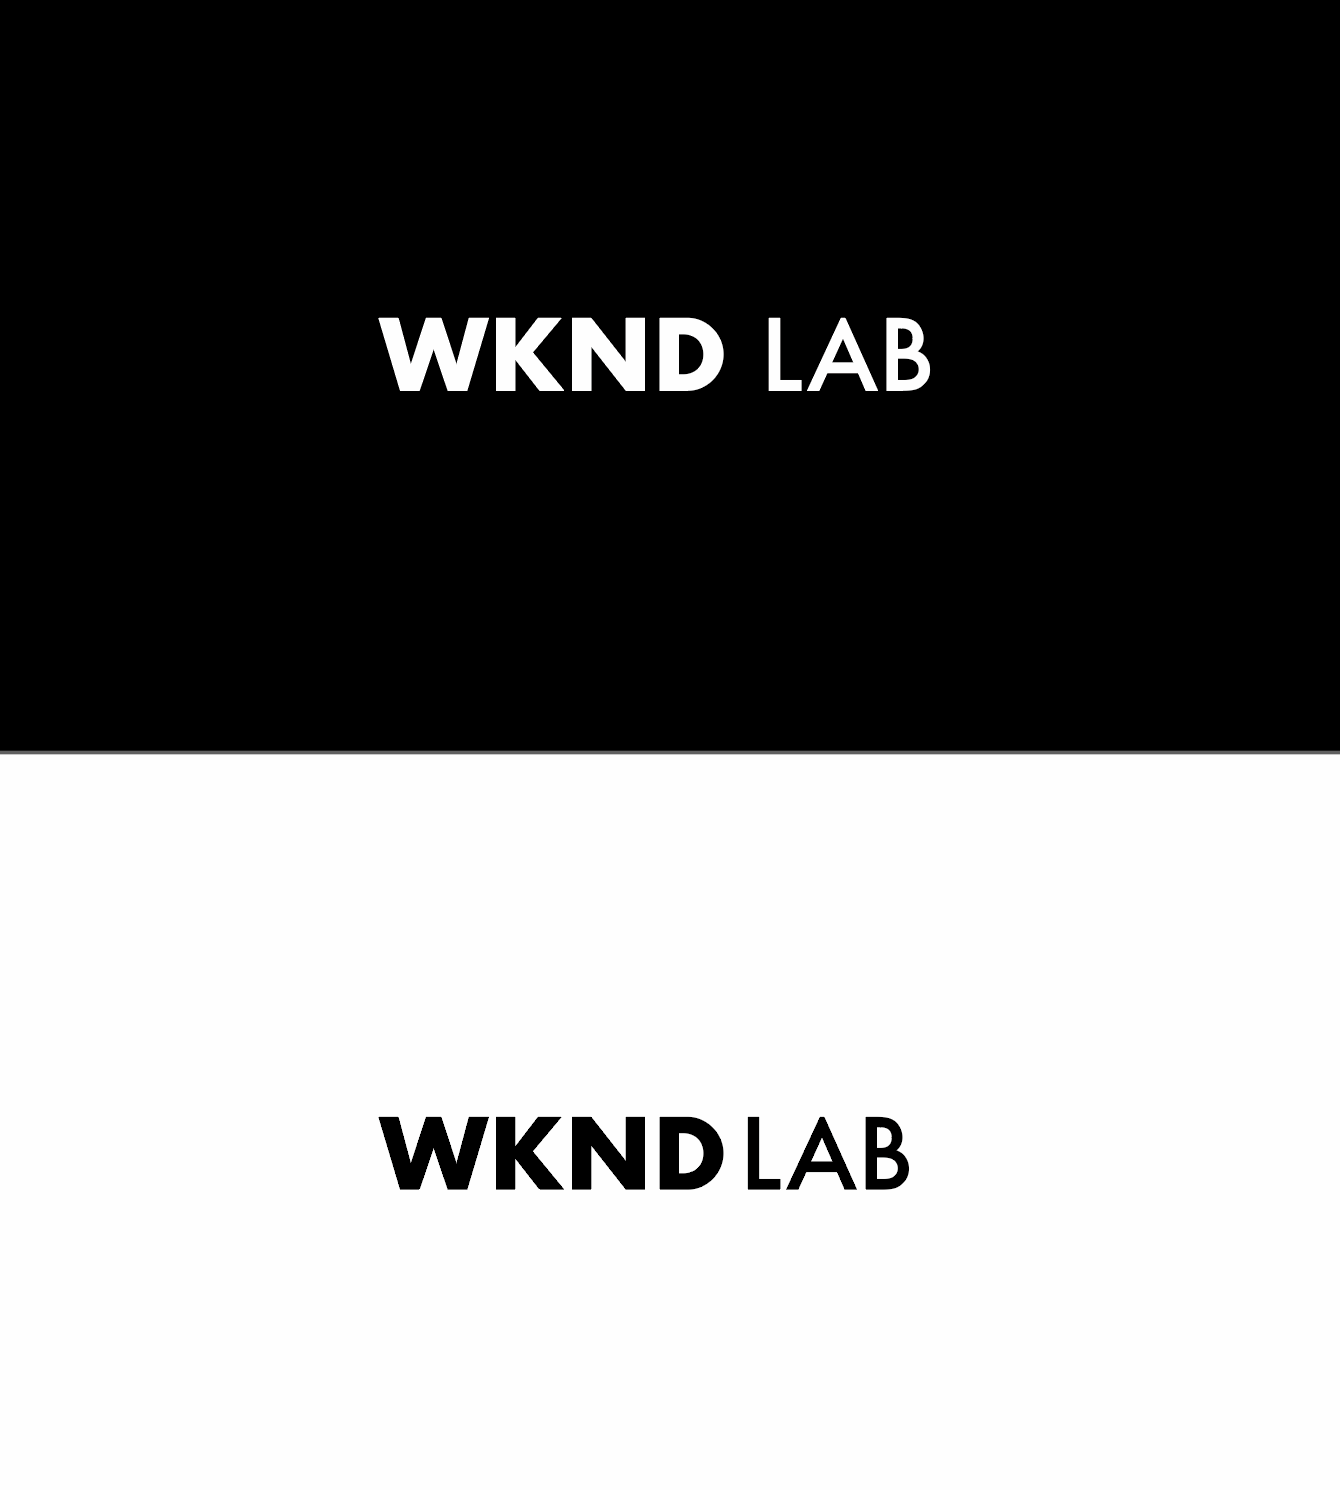 WKND lab Inc.